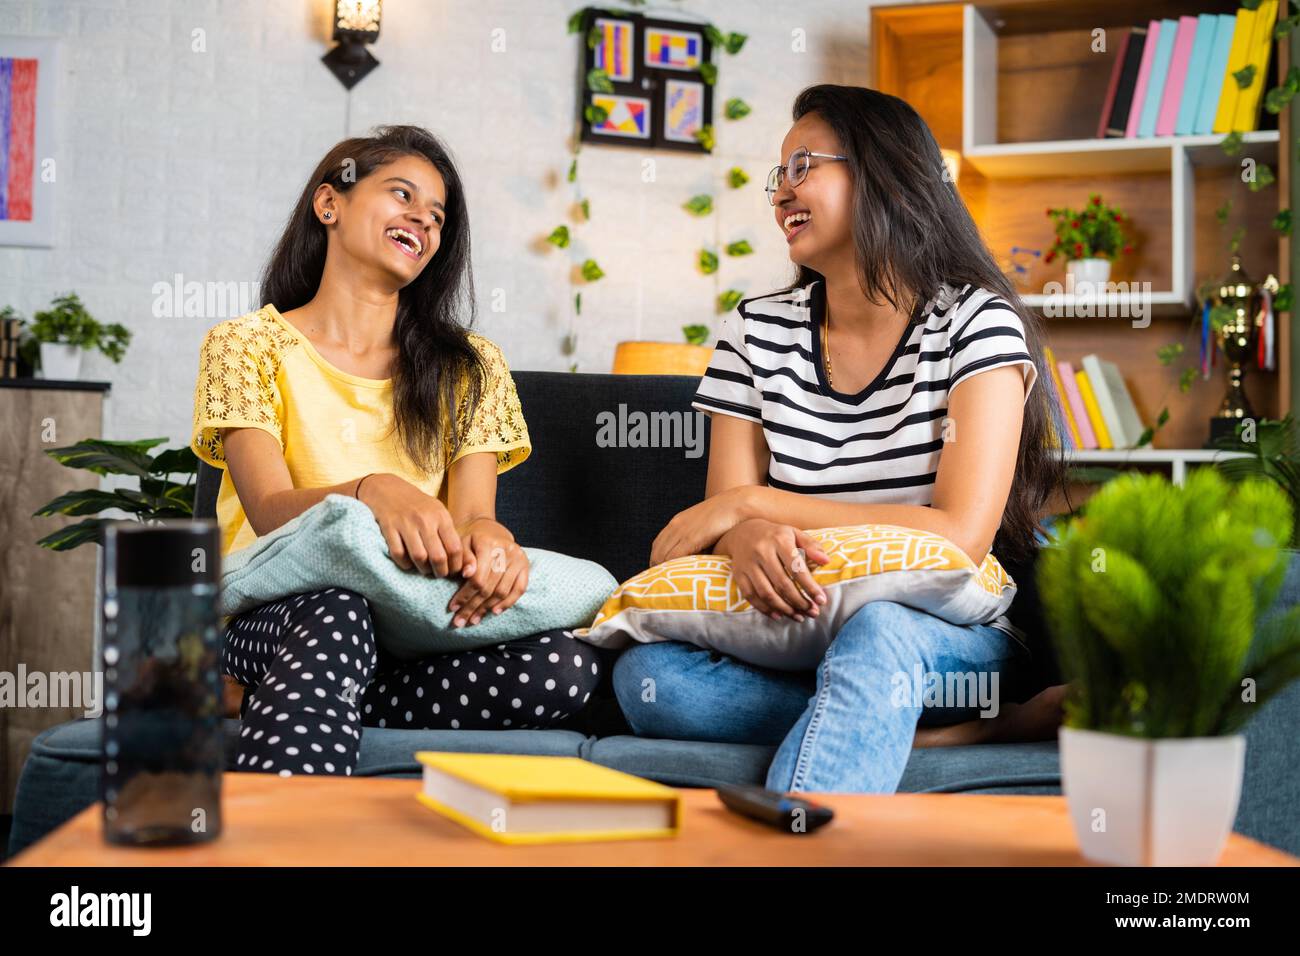 Fröhliche Geschwistermädchen, die zu Hause auf dem Sofa miteinander lachen - Konzept der Freizeitgestaltung, Beziehung und. Stockfoto